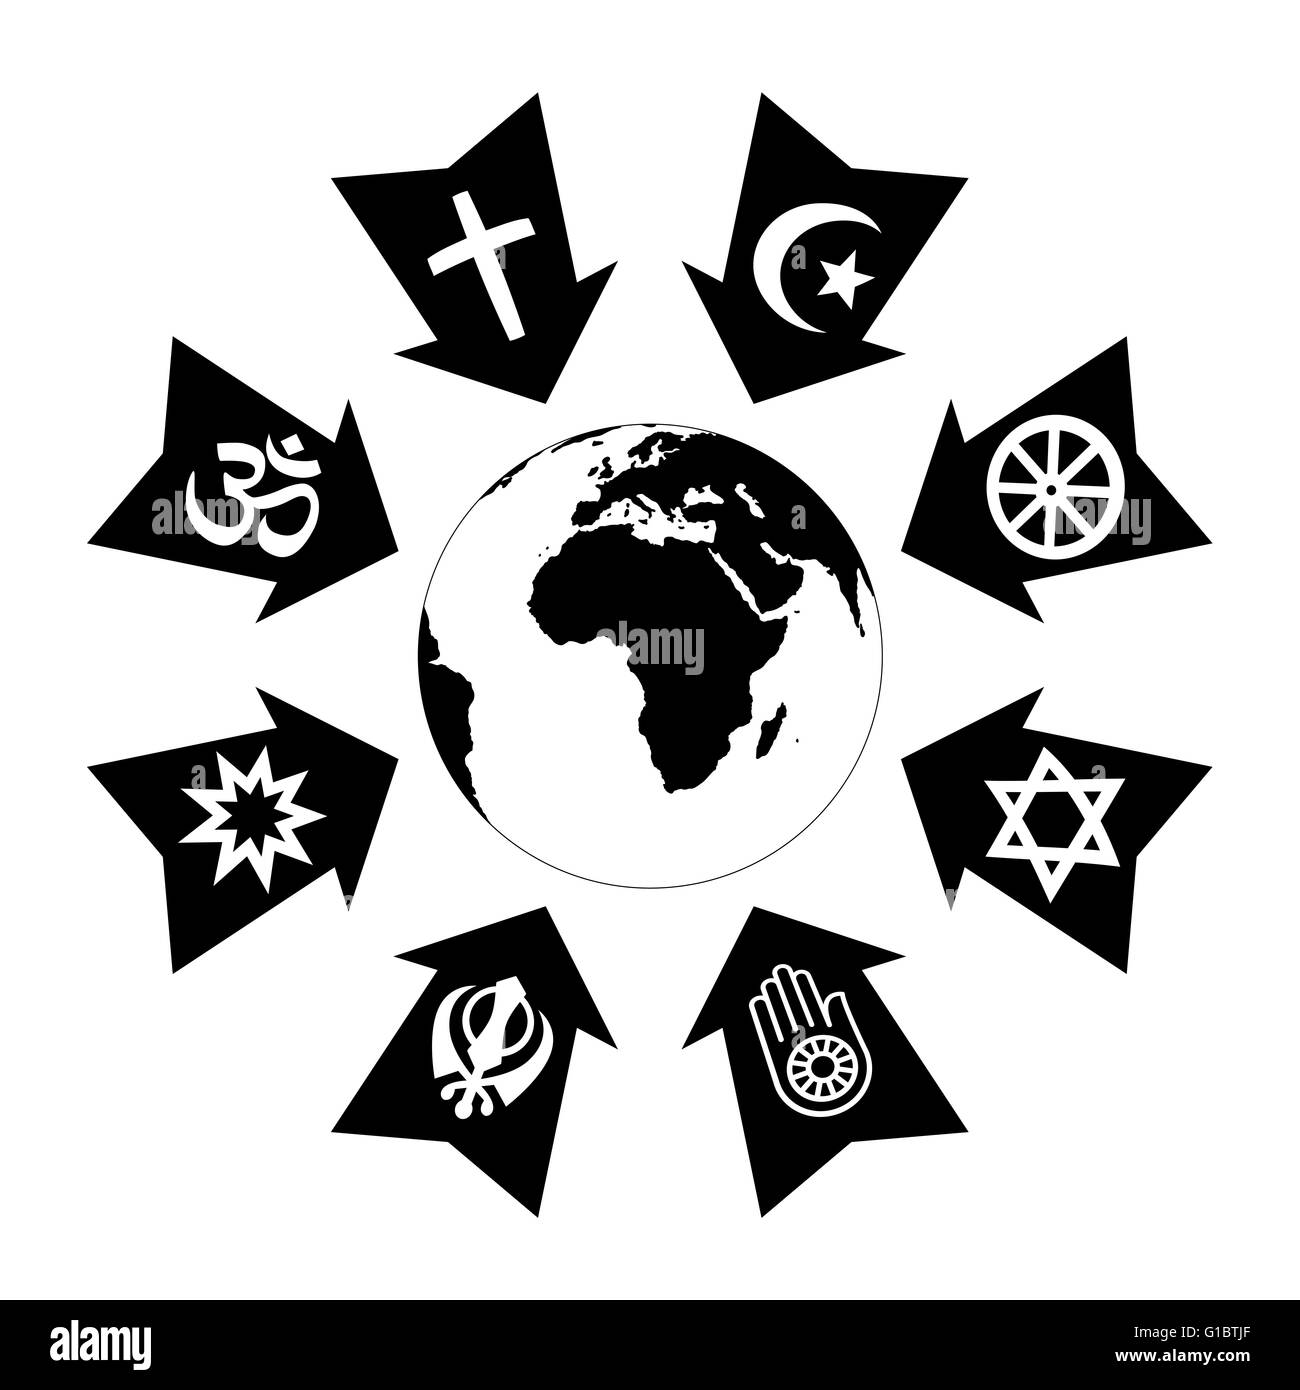 Druck, Stress und Thread aufgrund von Religion, mit religiösen Symbolen zeigt auf Planetenerde als schwarze Pfeile dargestellt. Stockfoto